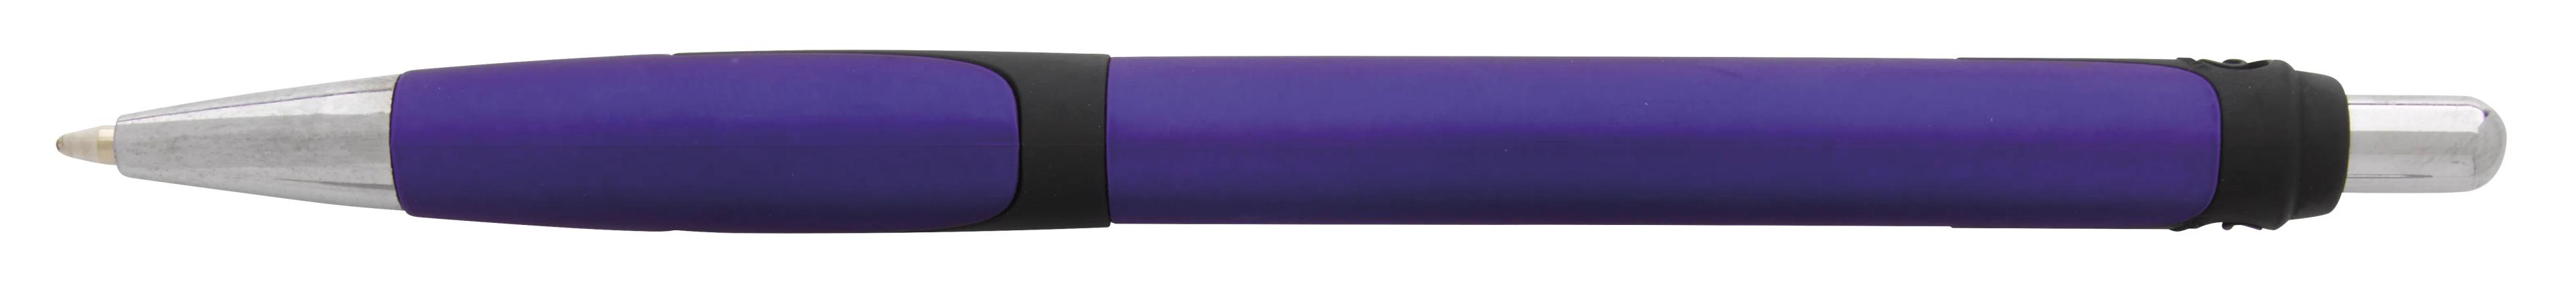 Souvenir® Toro Pen 3 of 31